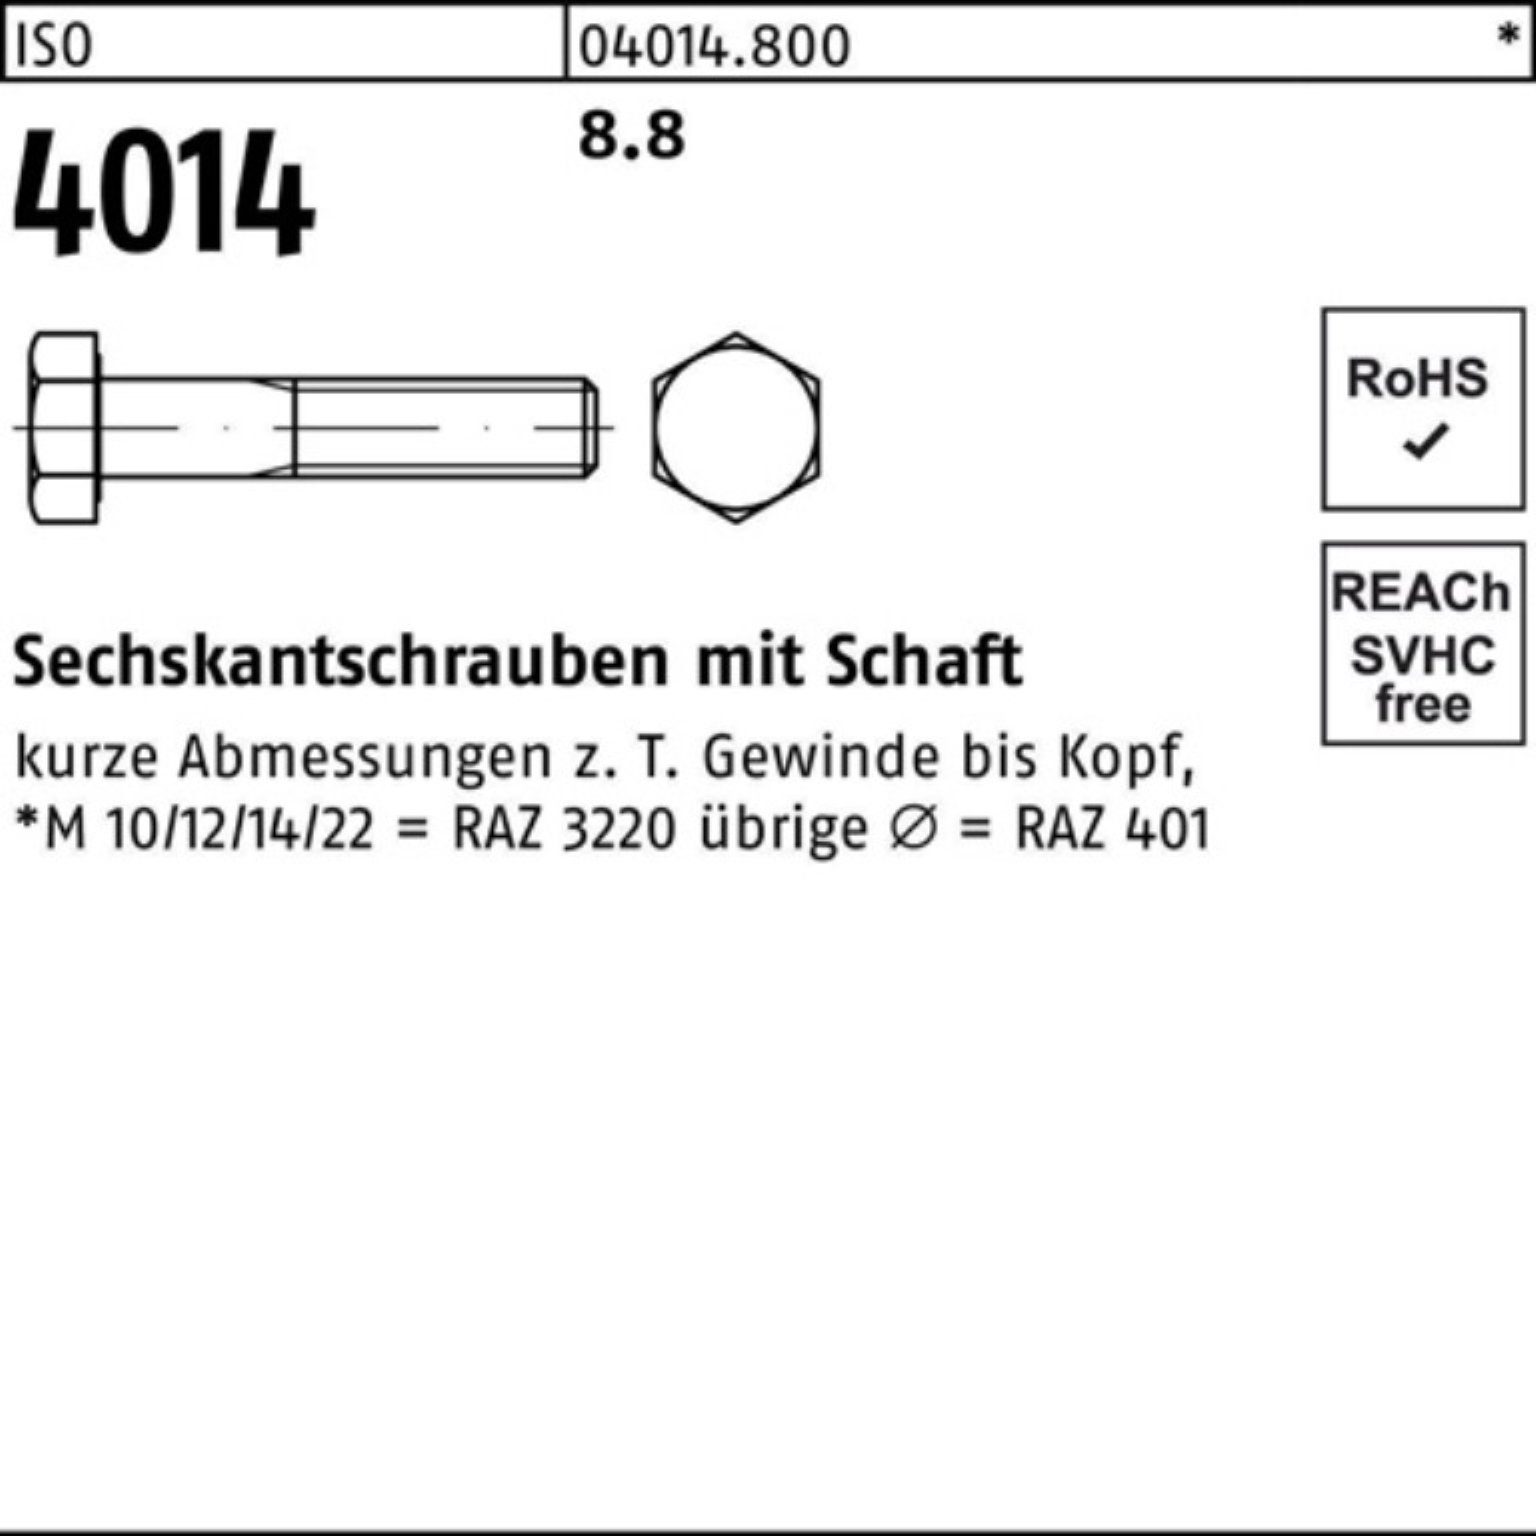 Schaft 25 Bufab Pack Sechskantschraube 4014 Stück 8.8 270 100er M14x Sechskantschraube ISO IS